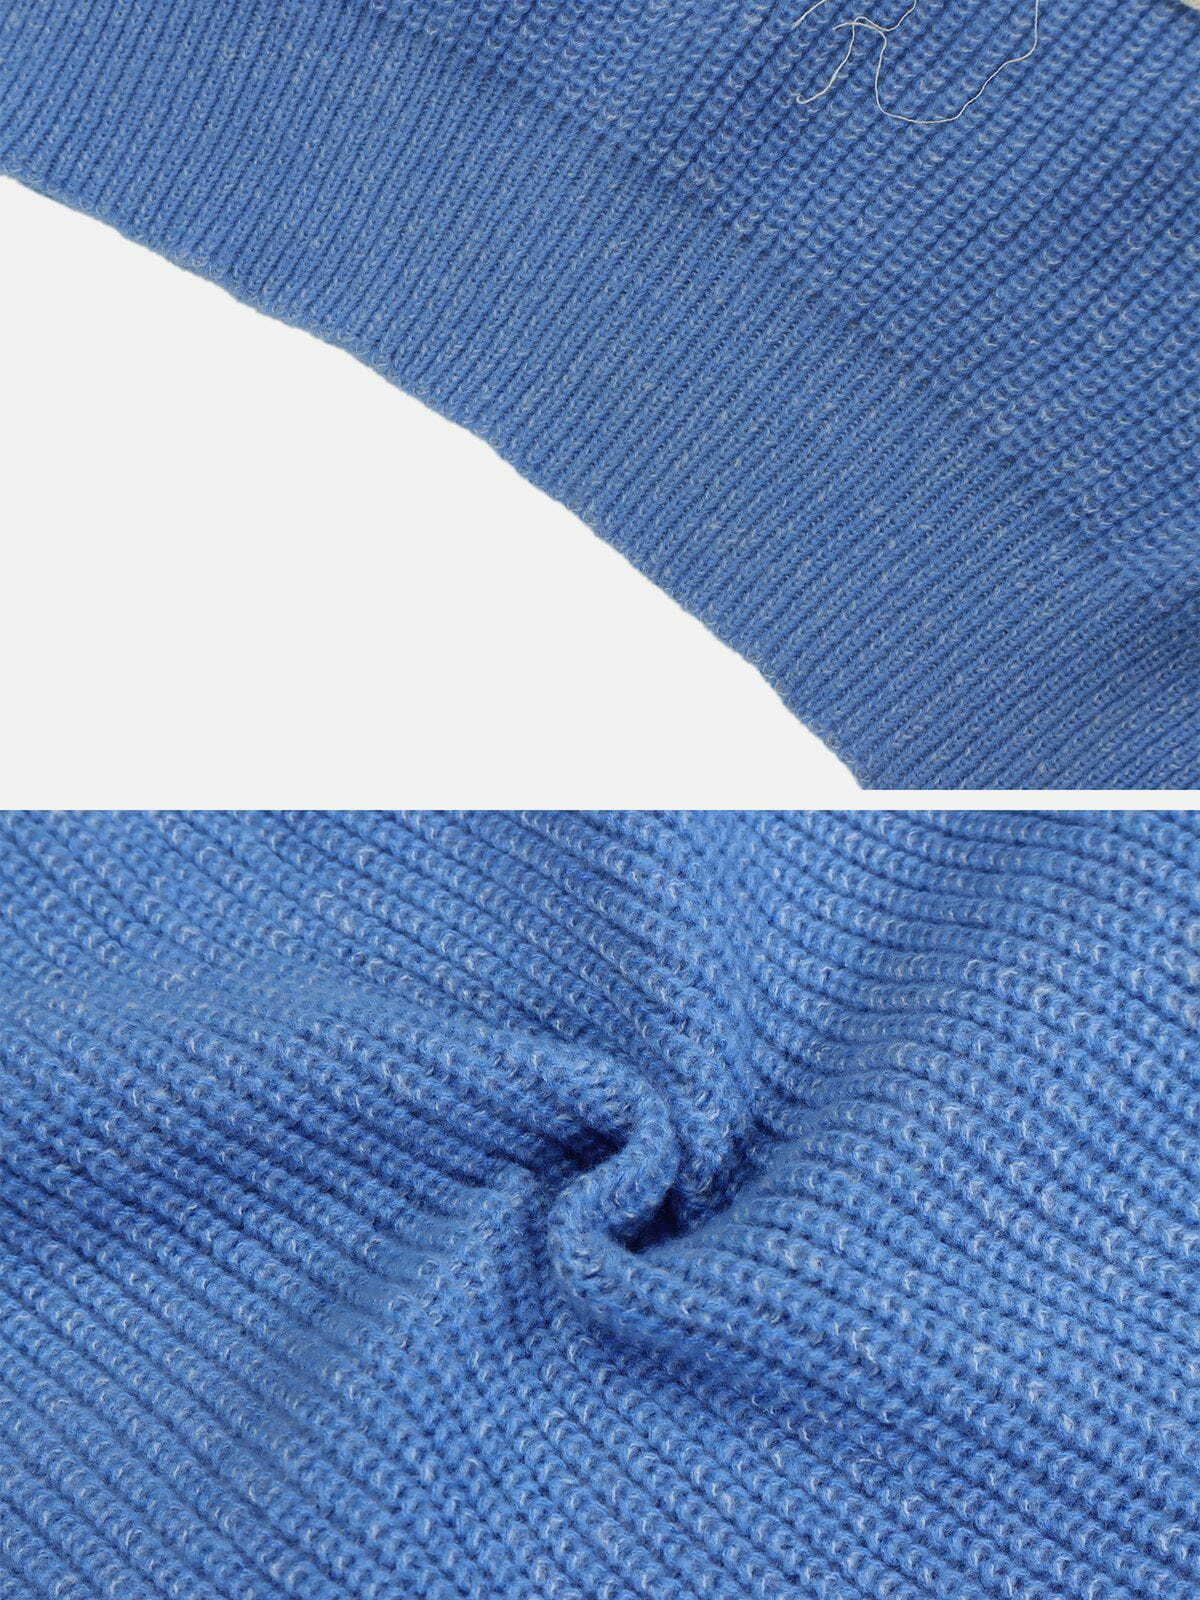 retro tie dye sweater vibrant & trendy streetwear 4487